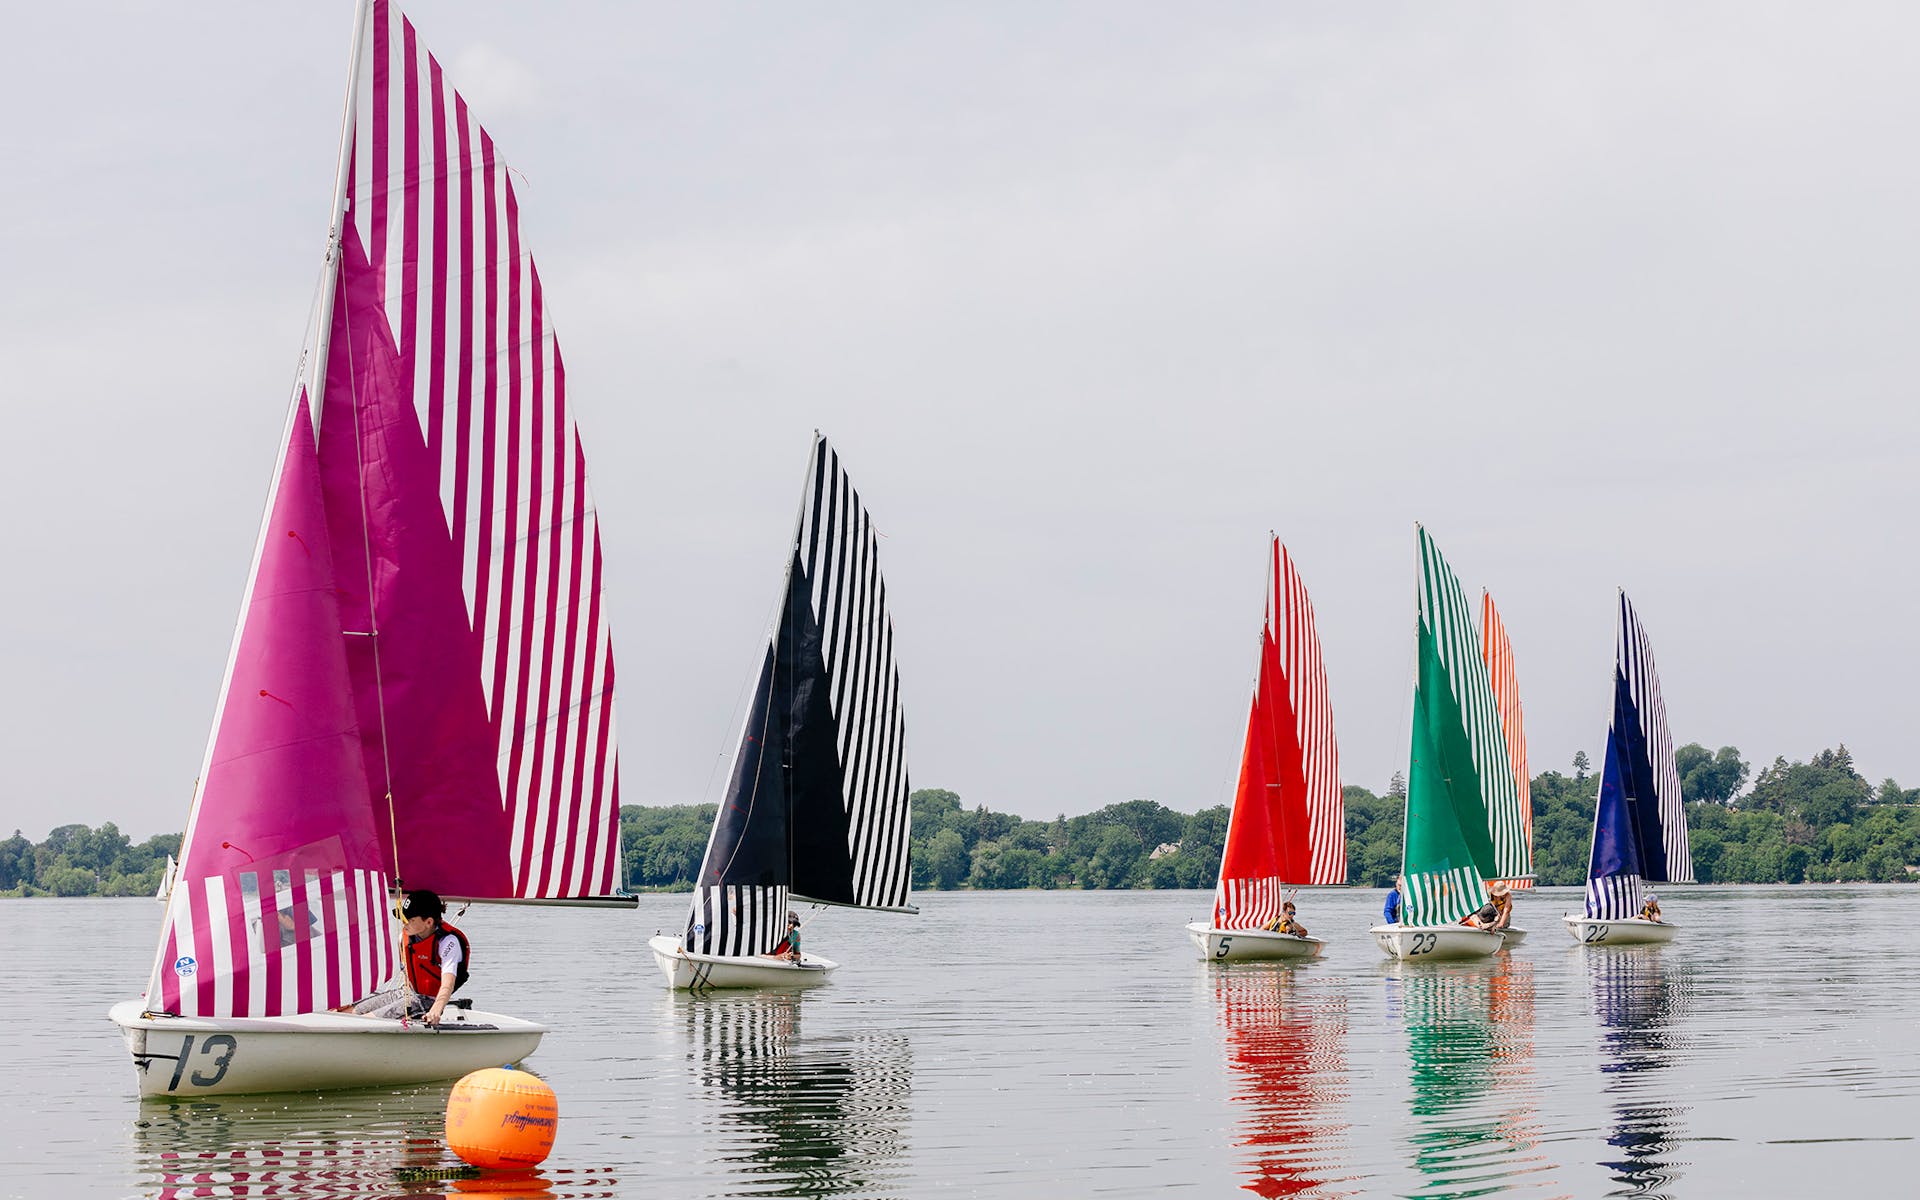 Daniel Buren's sails on sailboats in Lake Bde Maka Ska